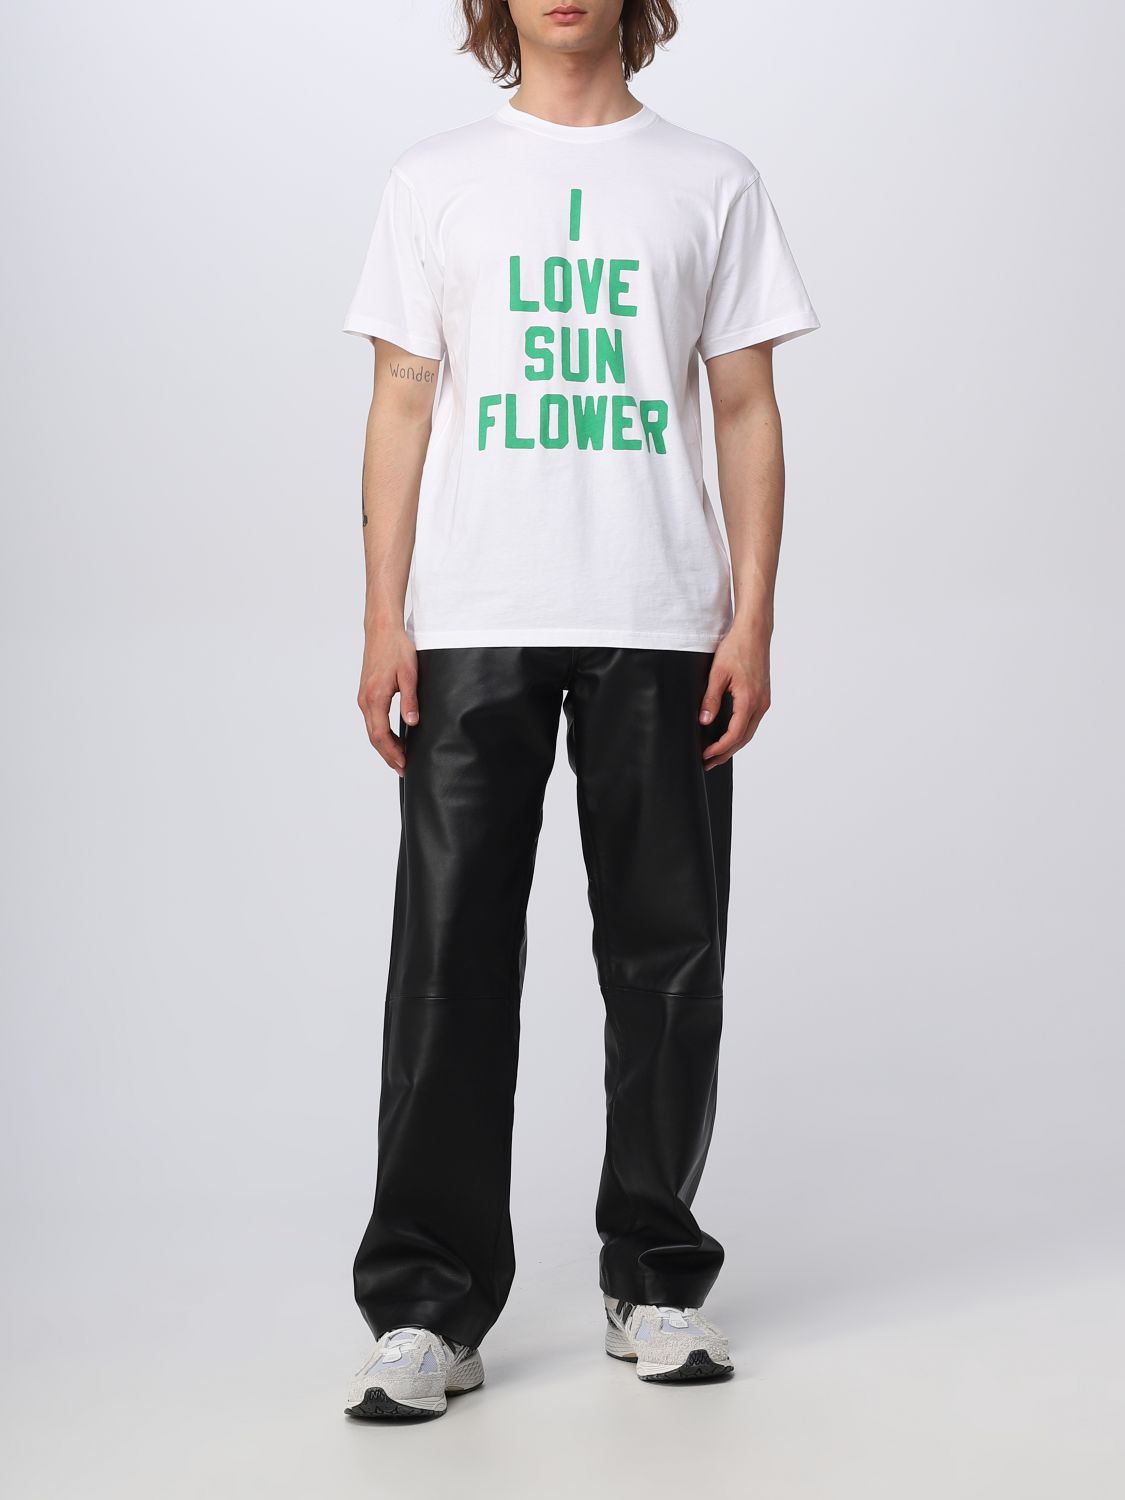 SUNFLOWER: t-shirt for man - White | Sunflower t-shirt